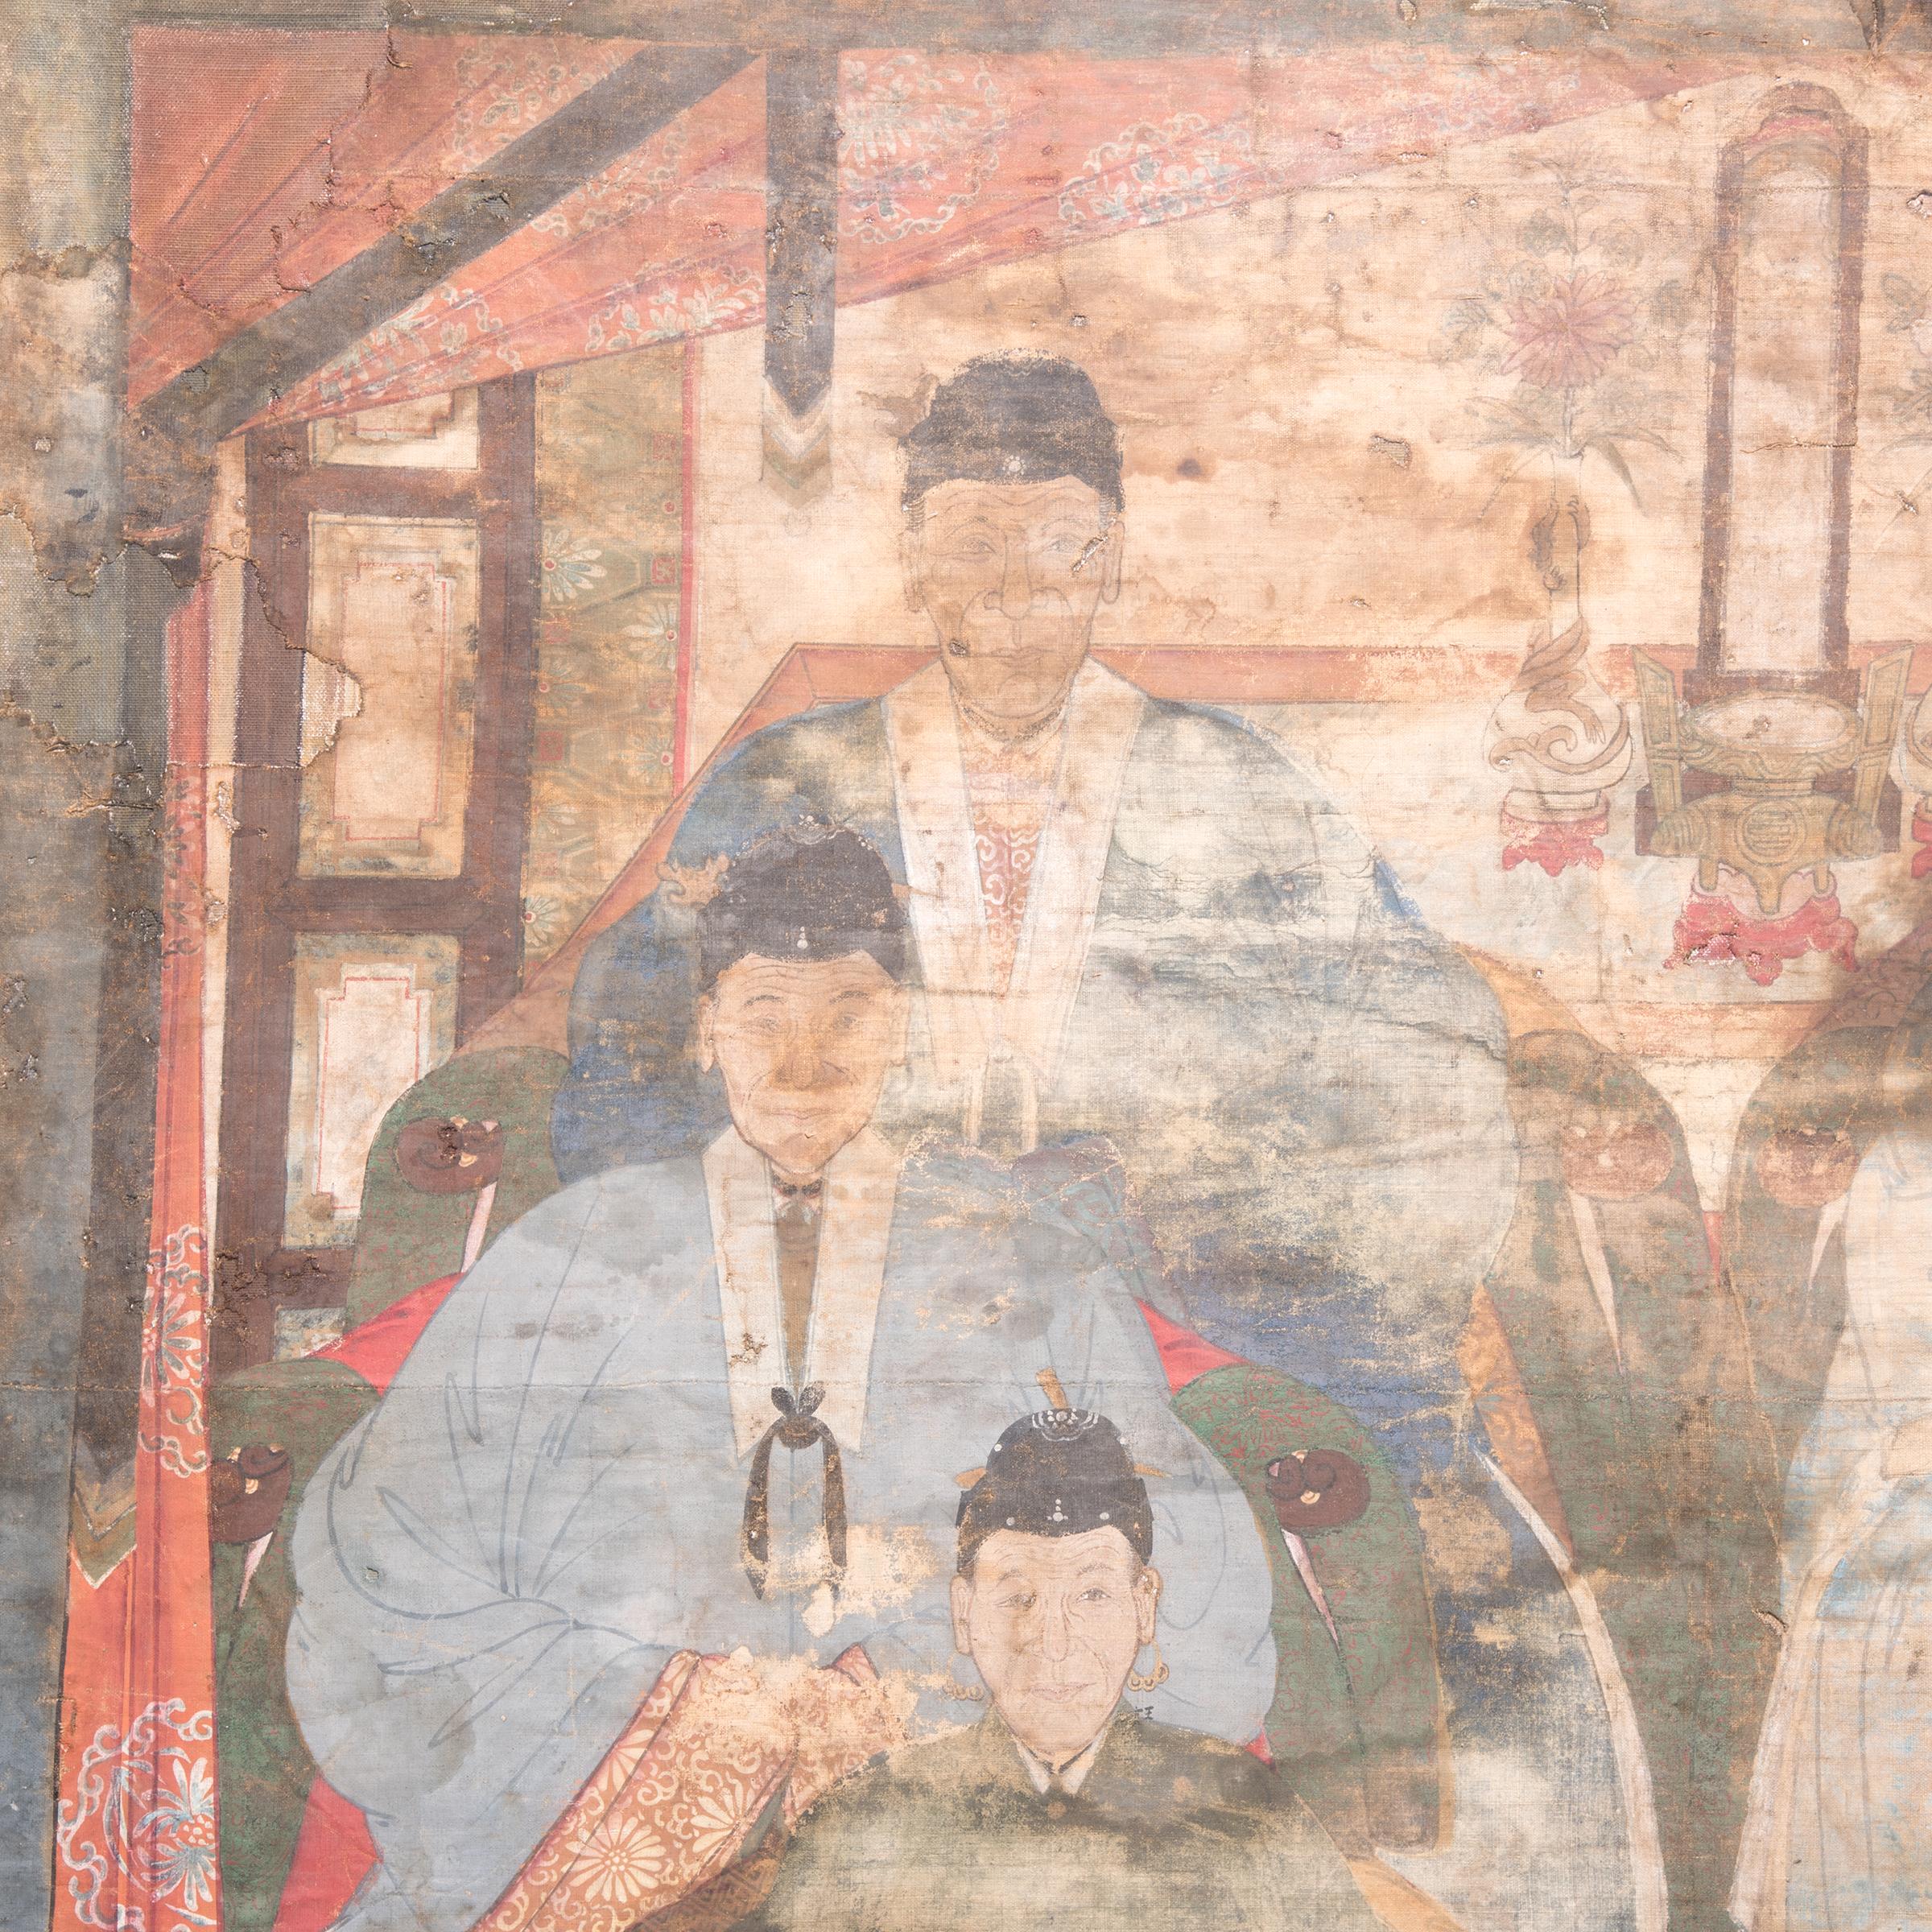 Dieses Gemälde aus der Qing-Dynastie, das die Rolle der Ahnenverehrung in der chinesischen Kultur widerspiegelt, zeigt mehrere Generationen von Familienmitgliedern in detailreichen und farbenprächtigen Gewändern. Die ältesten Vorfahren sind in der